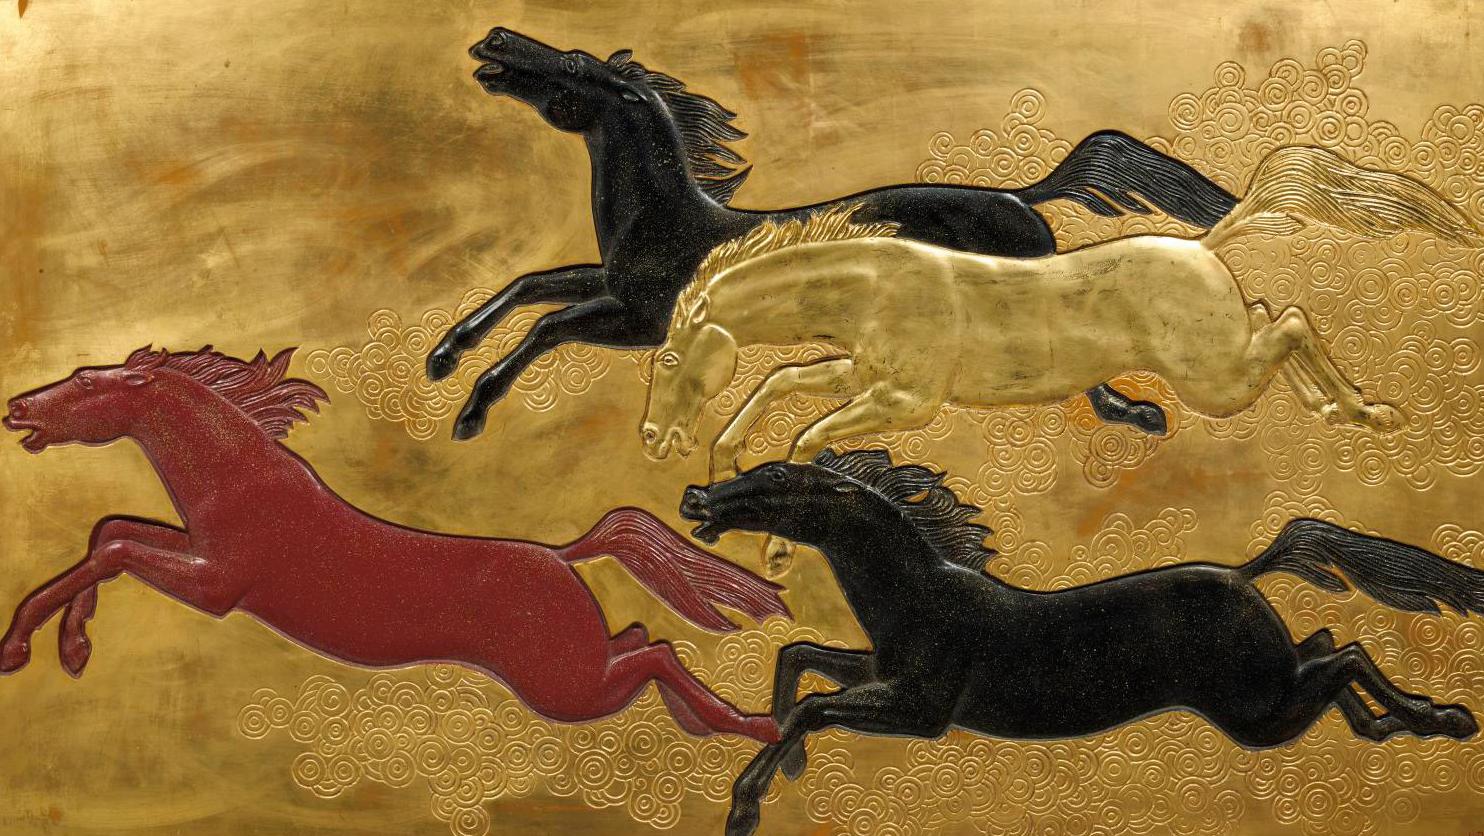 Jean Dunand (1877-1942), La Conquête du cheval (The Conquest of the Horse), plaster... Jean Dunand and the Conquest of the Horse